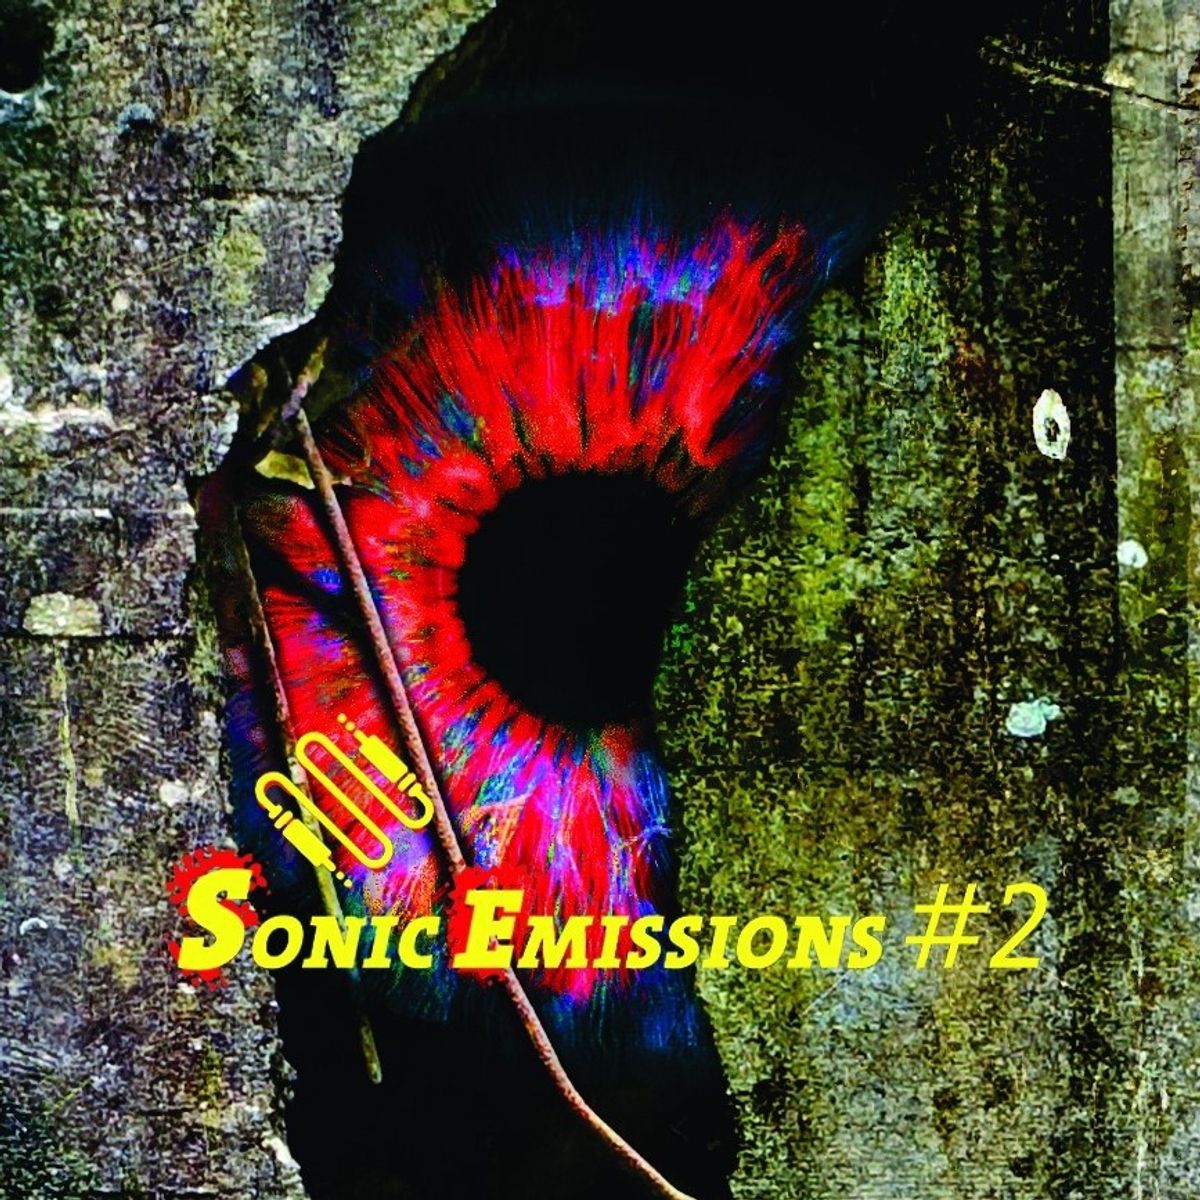 Sonic Emissions #2